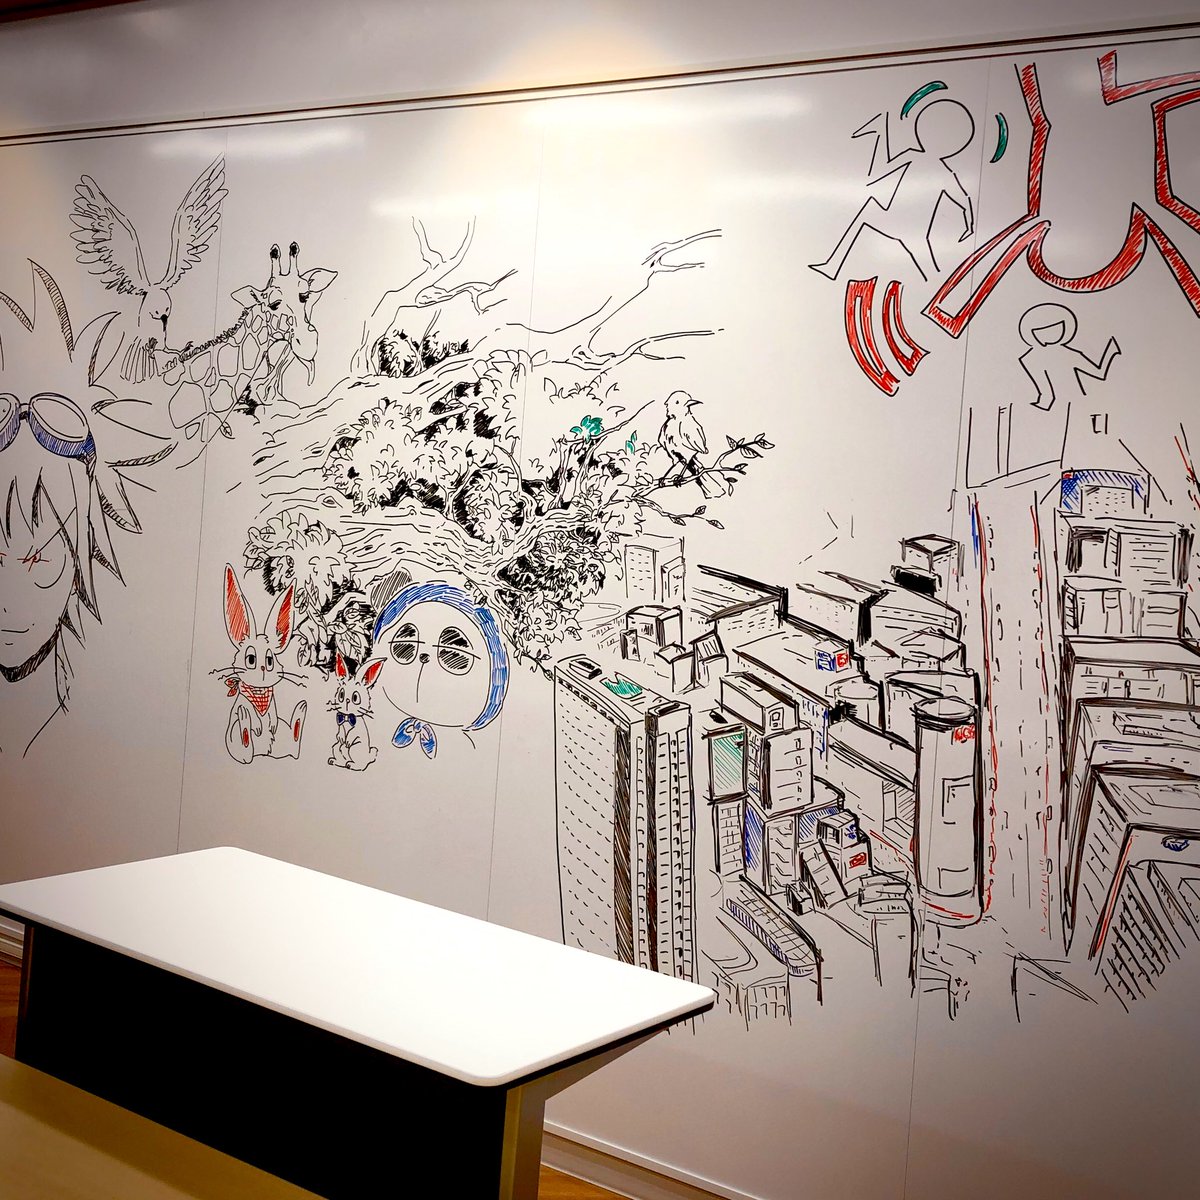 専門学校日本デザイナー学院 Na Twitteru とある撮影で 教室の壁面いっぱいのホワイトボードにイラストを描いてもらいました 日本デザイナー学院 Nds デザイン イラスト インテリア マンガ 渋谷 専門学校 描き上げるまで1時間半 消すの2分 T